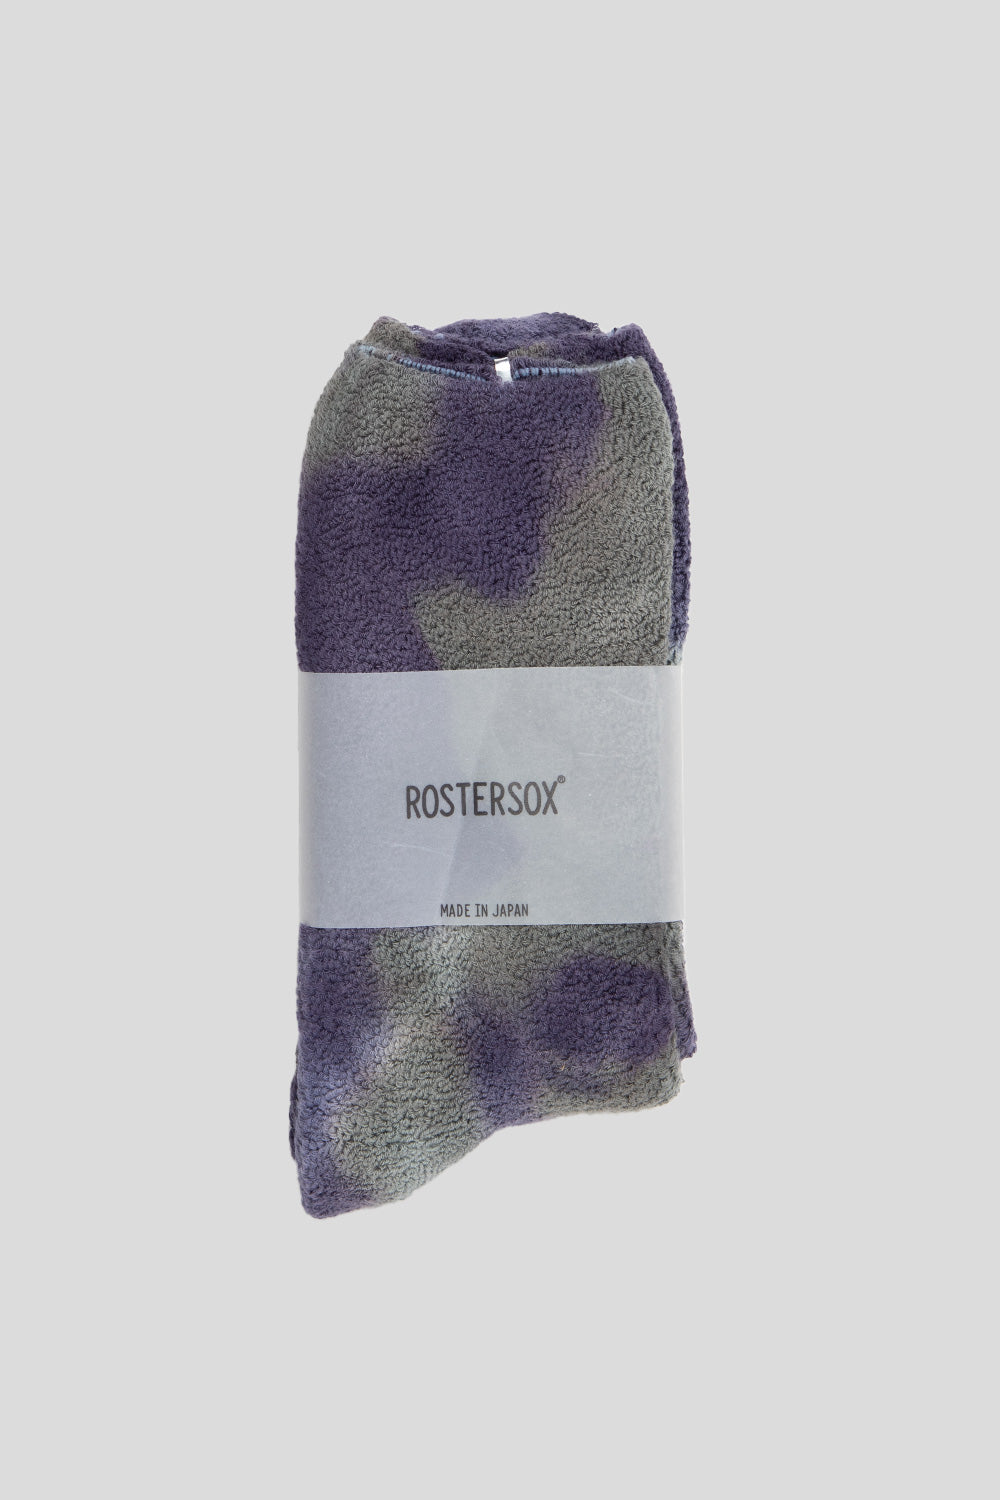 Rostersox TDR Socks in Purple